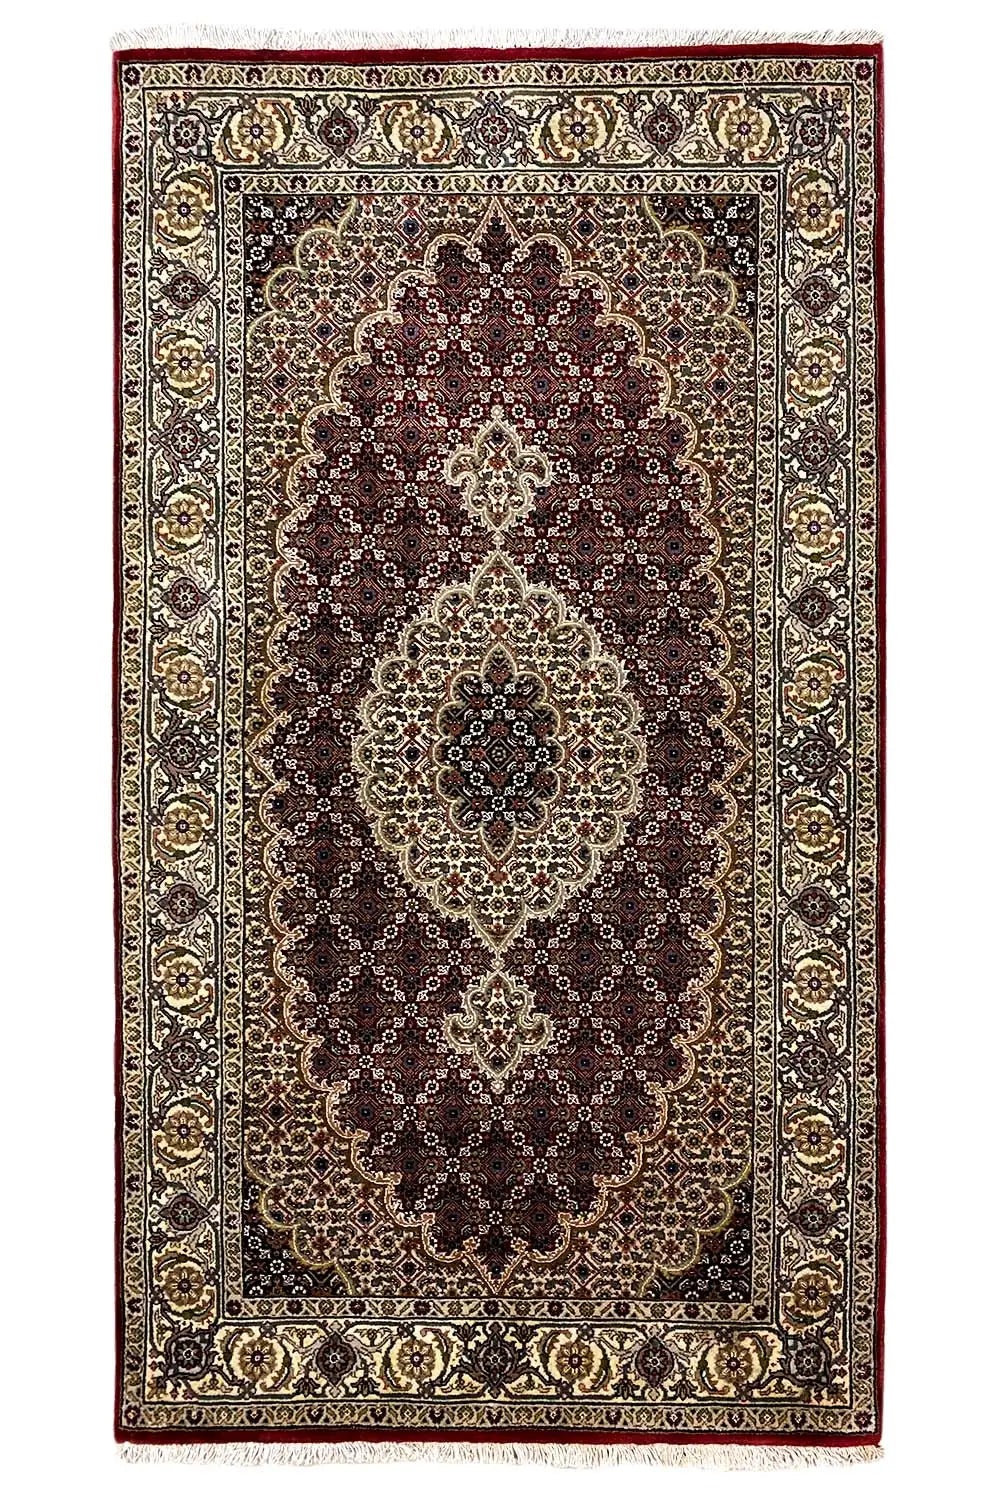 Täbriz - Mahi (167x89cm) - German Carpet Shop